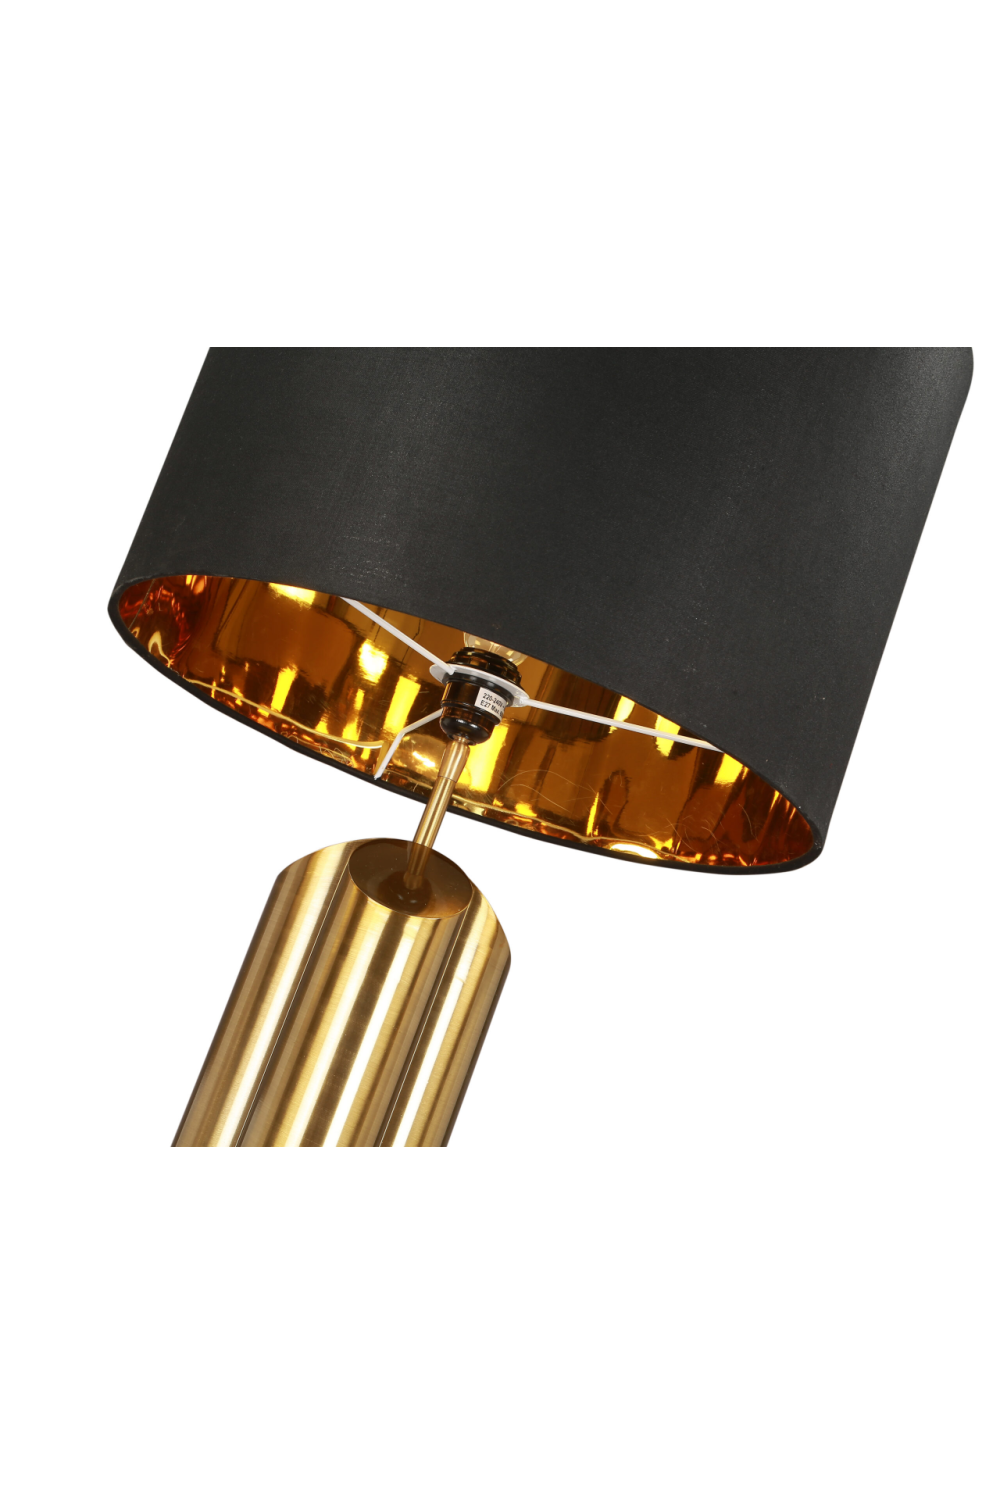 Brushed Brass Table Lamp | Liang & Eimil Obelisk | OROA.com